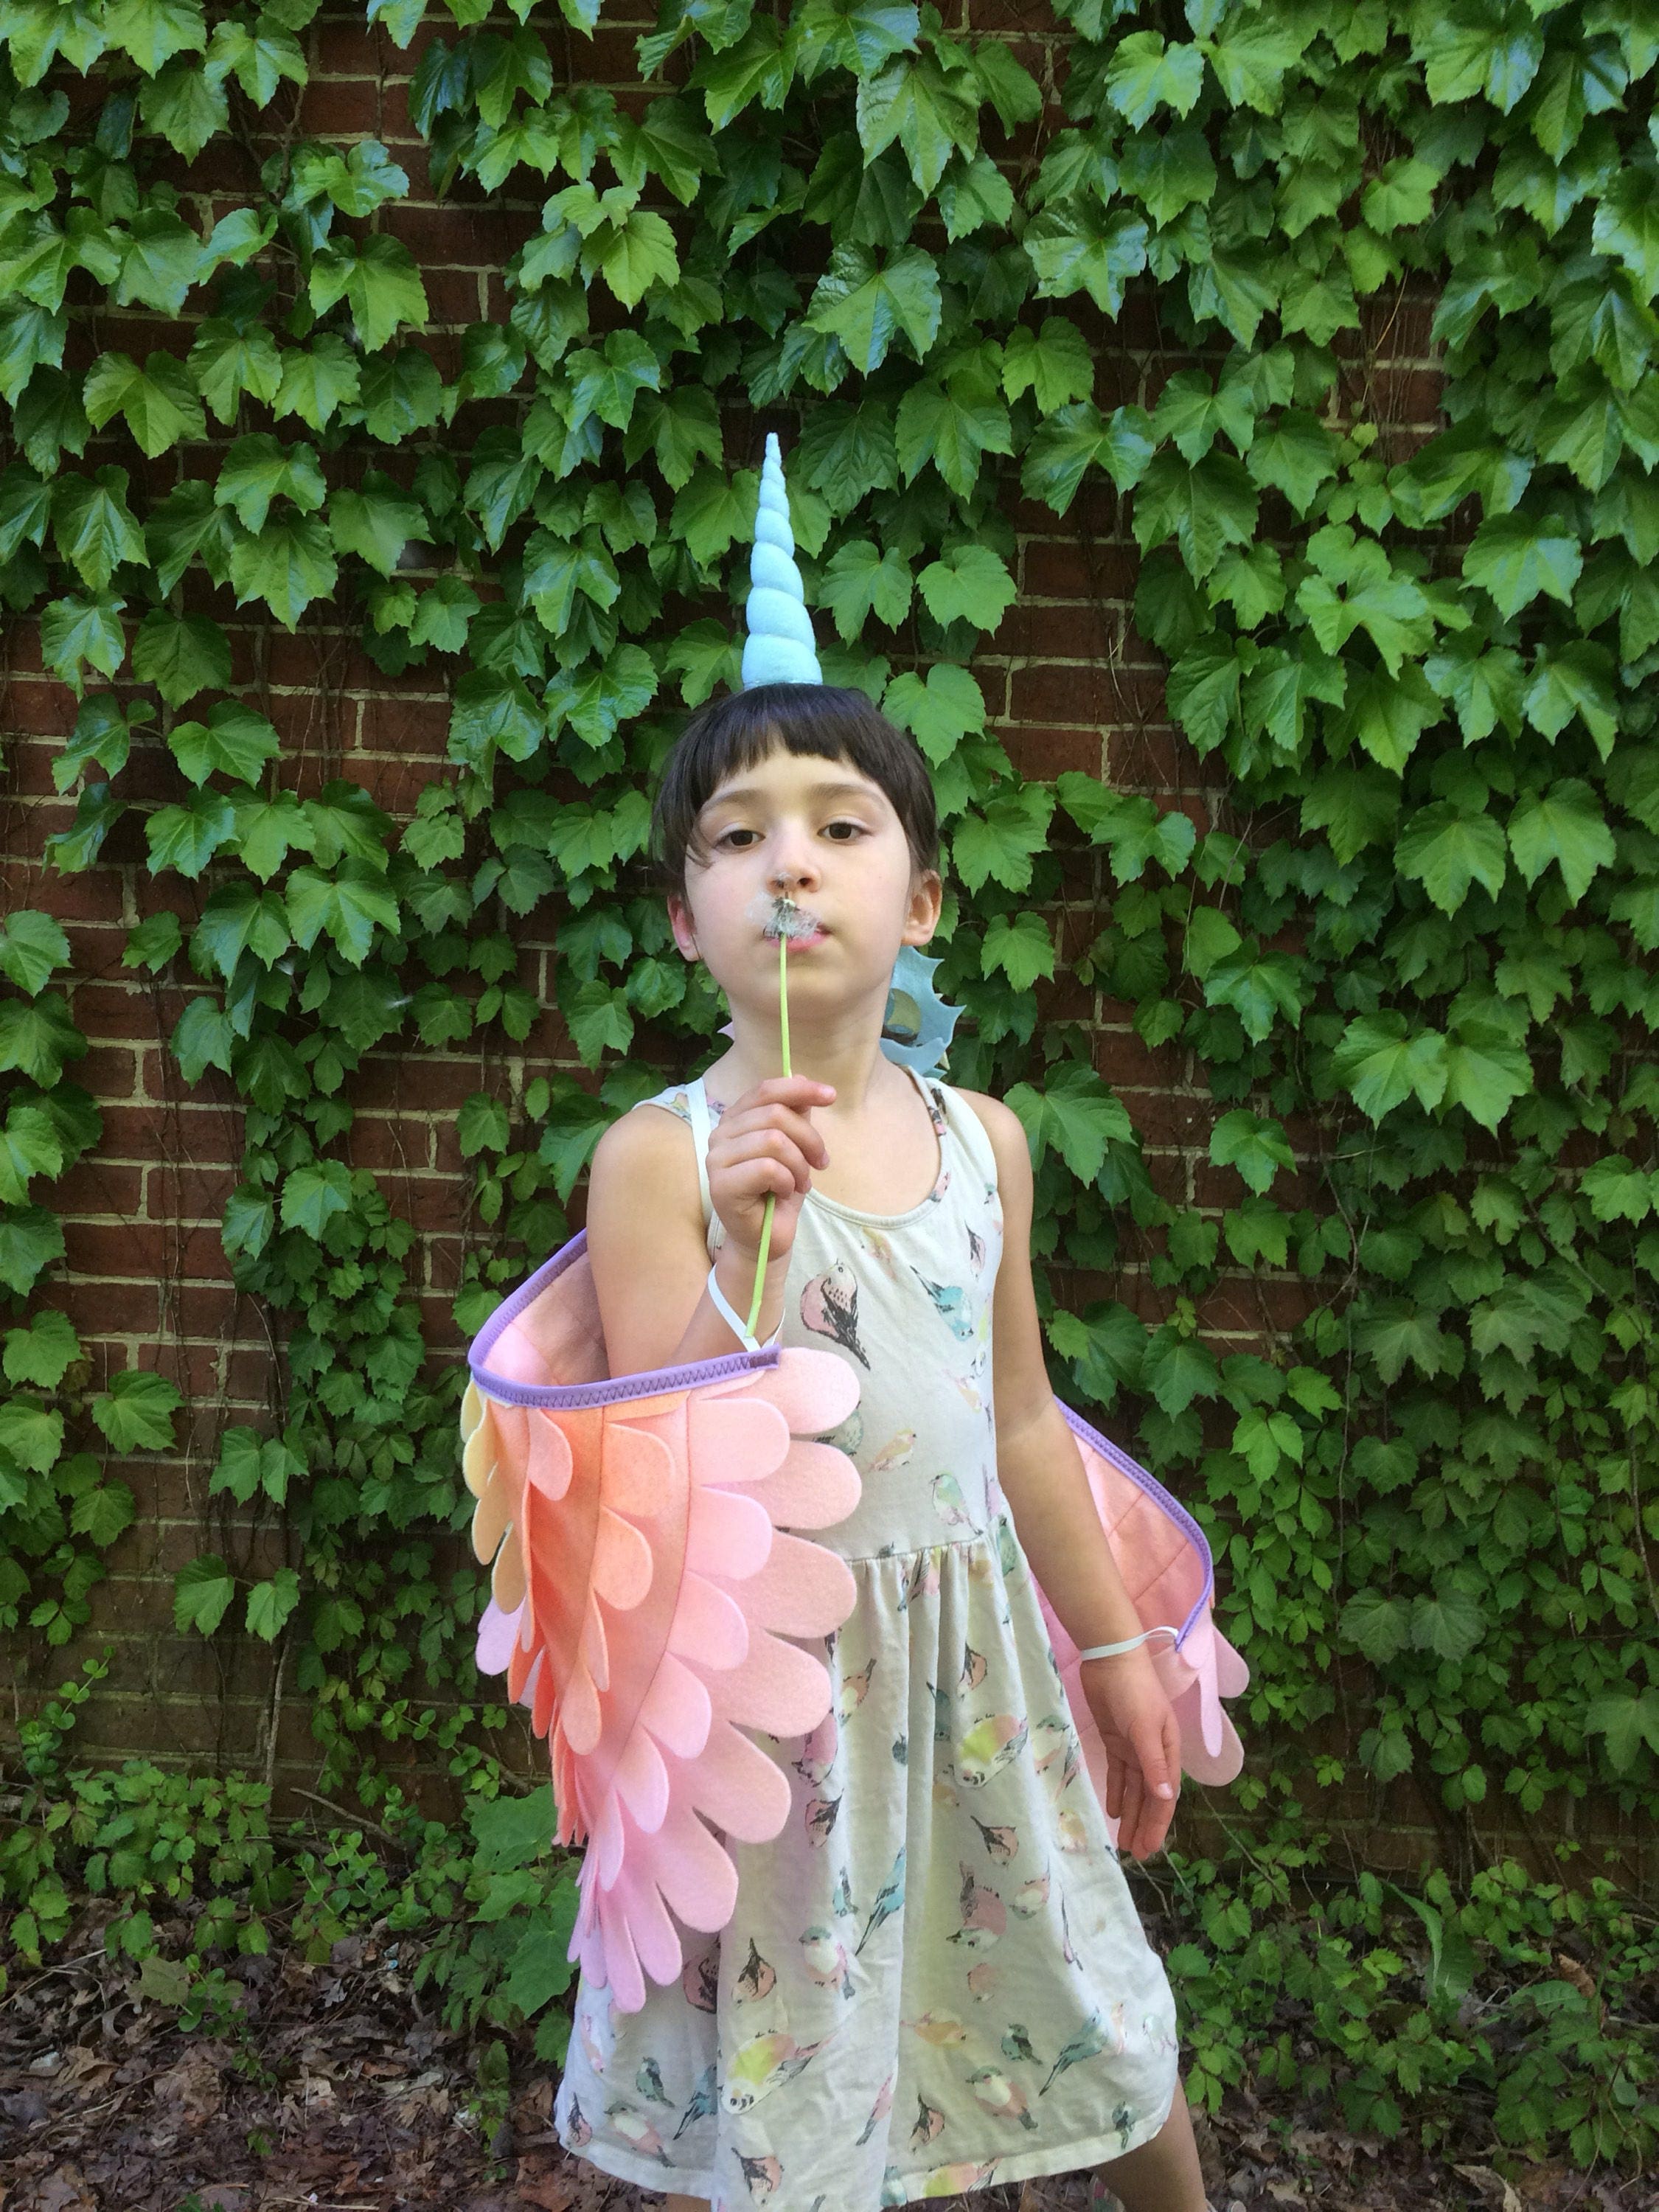 Cabeza De Cuerno De Unicornio Mágico Niños Diadema Elaborado Vestido Juegos con disfraces Fiesta Decoración 